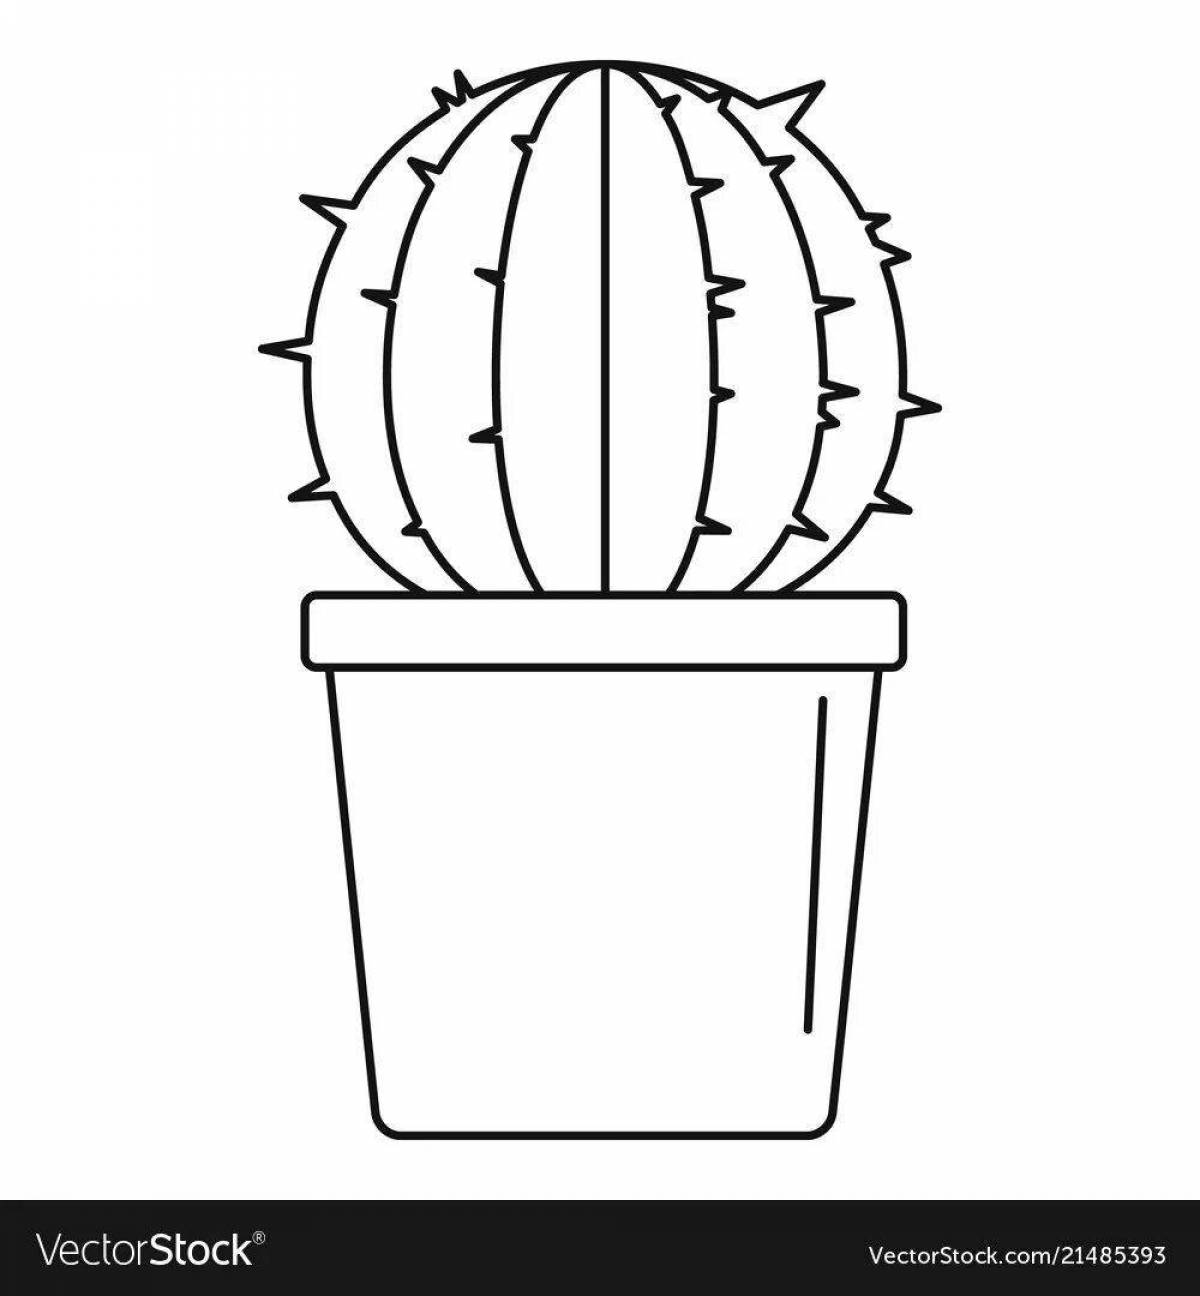 Joyful cactus in a pot